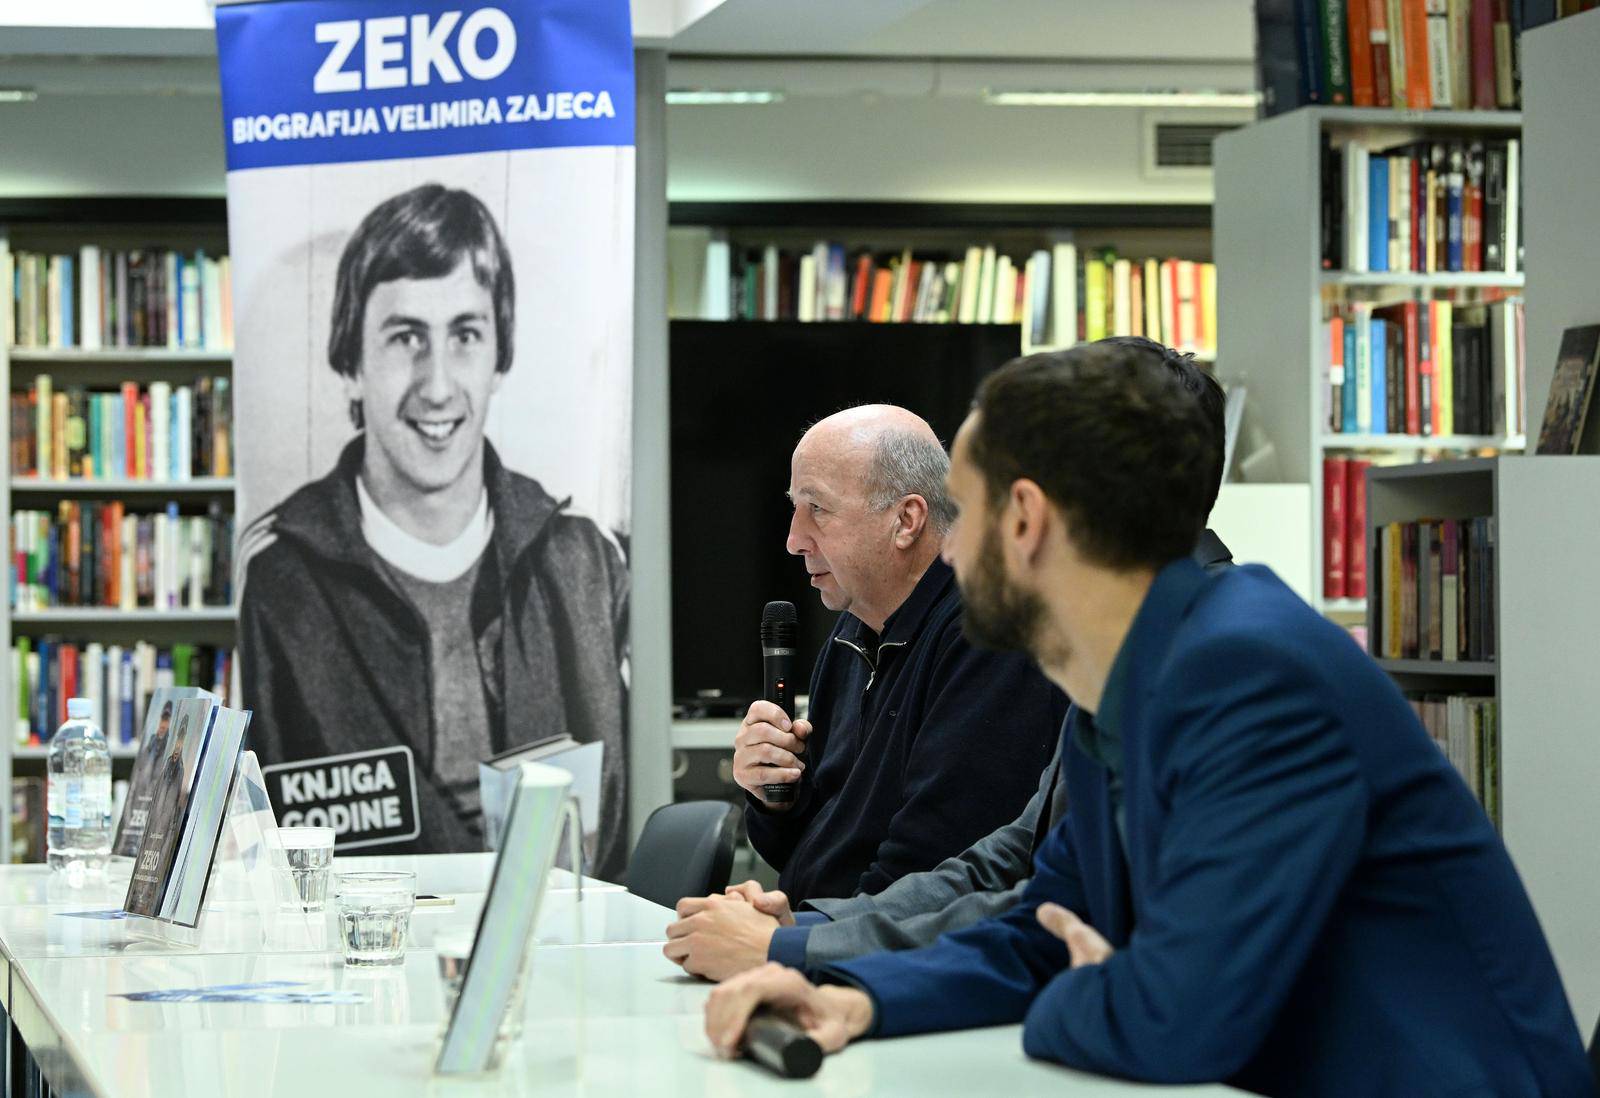 Zagreb: Promocija biografije Velimira Zajeca "Zeko" autora Sanjina Španovića